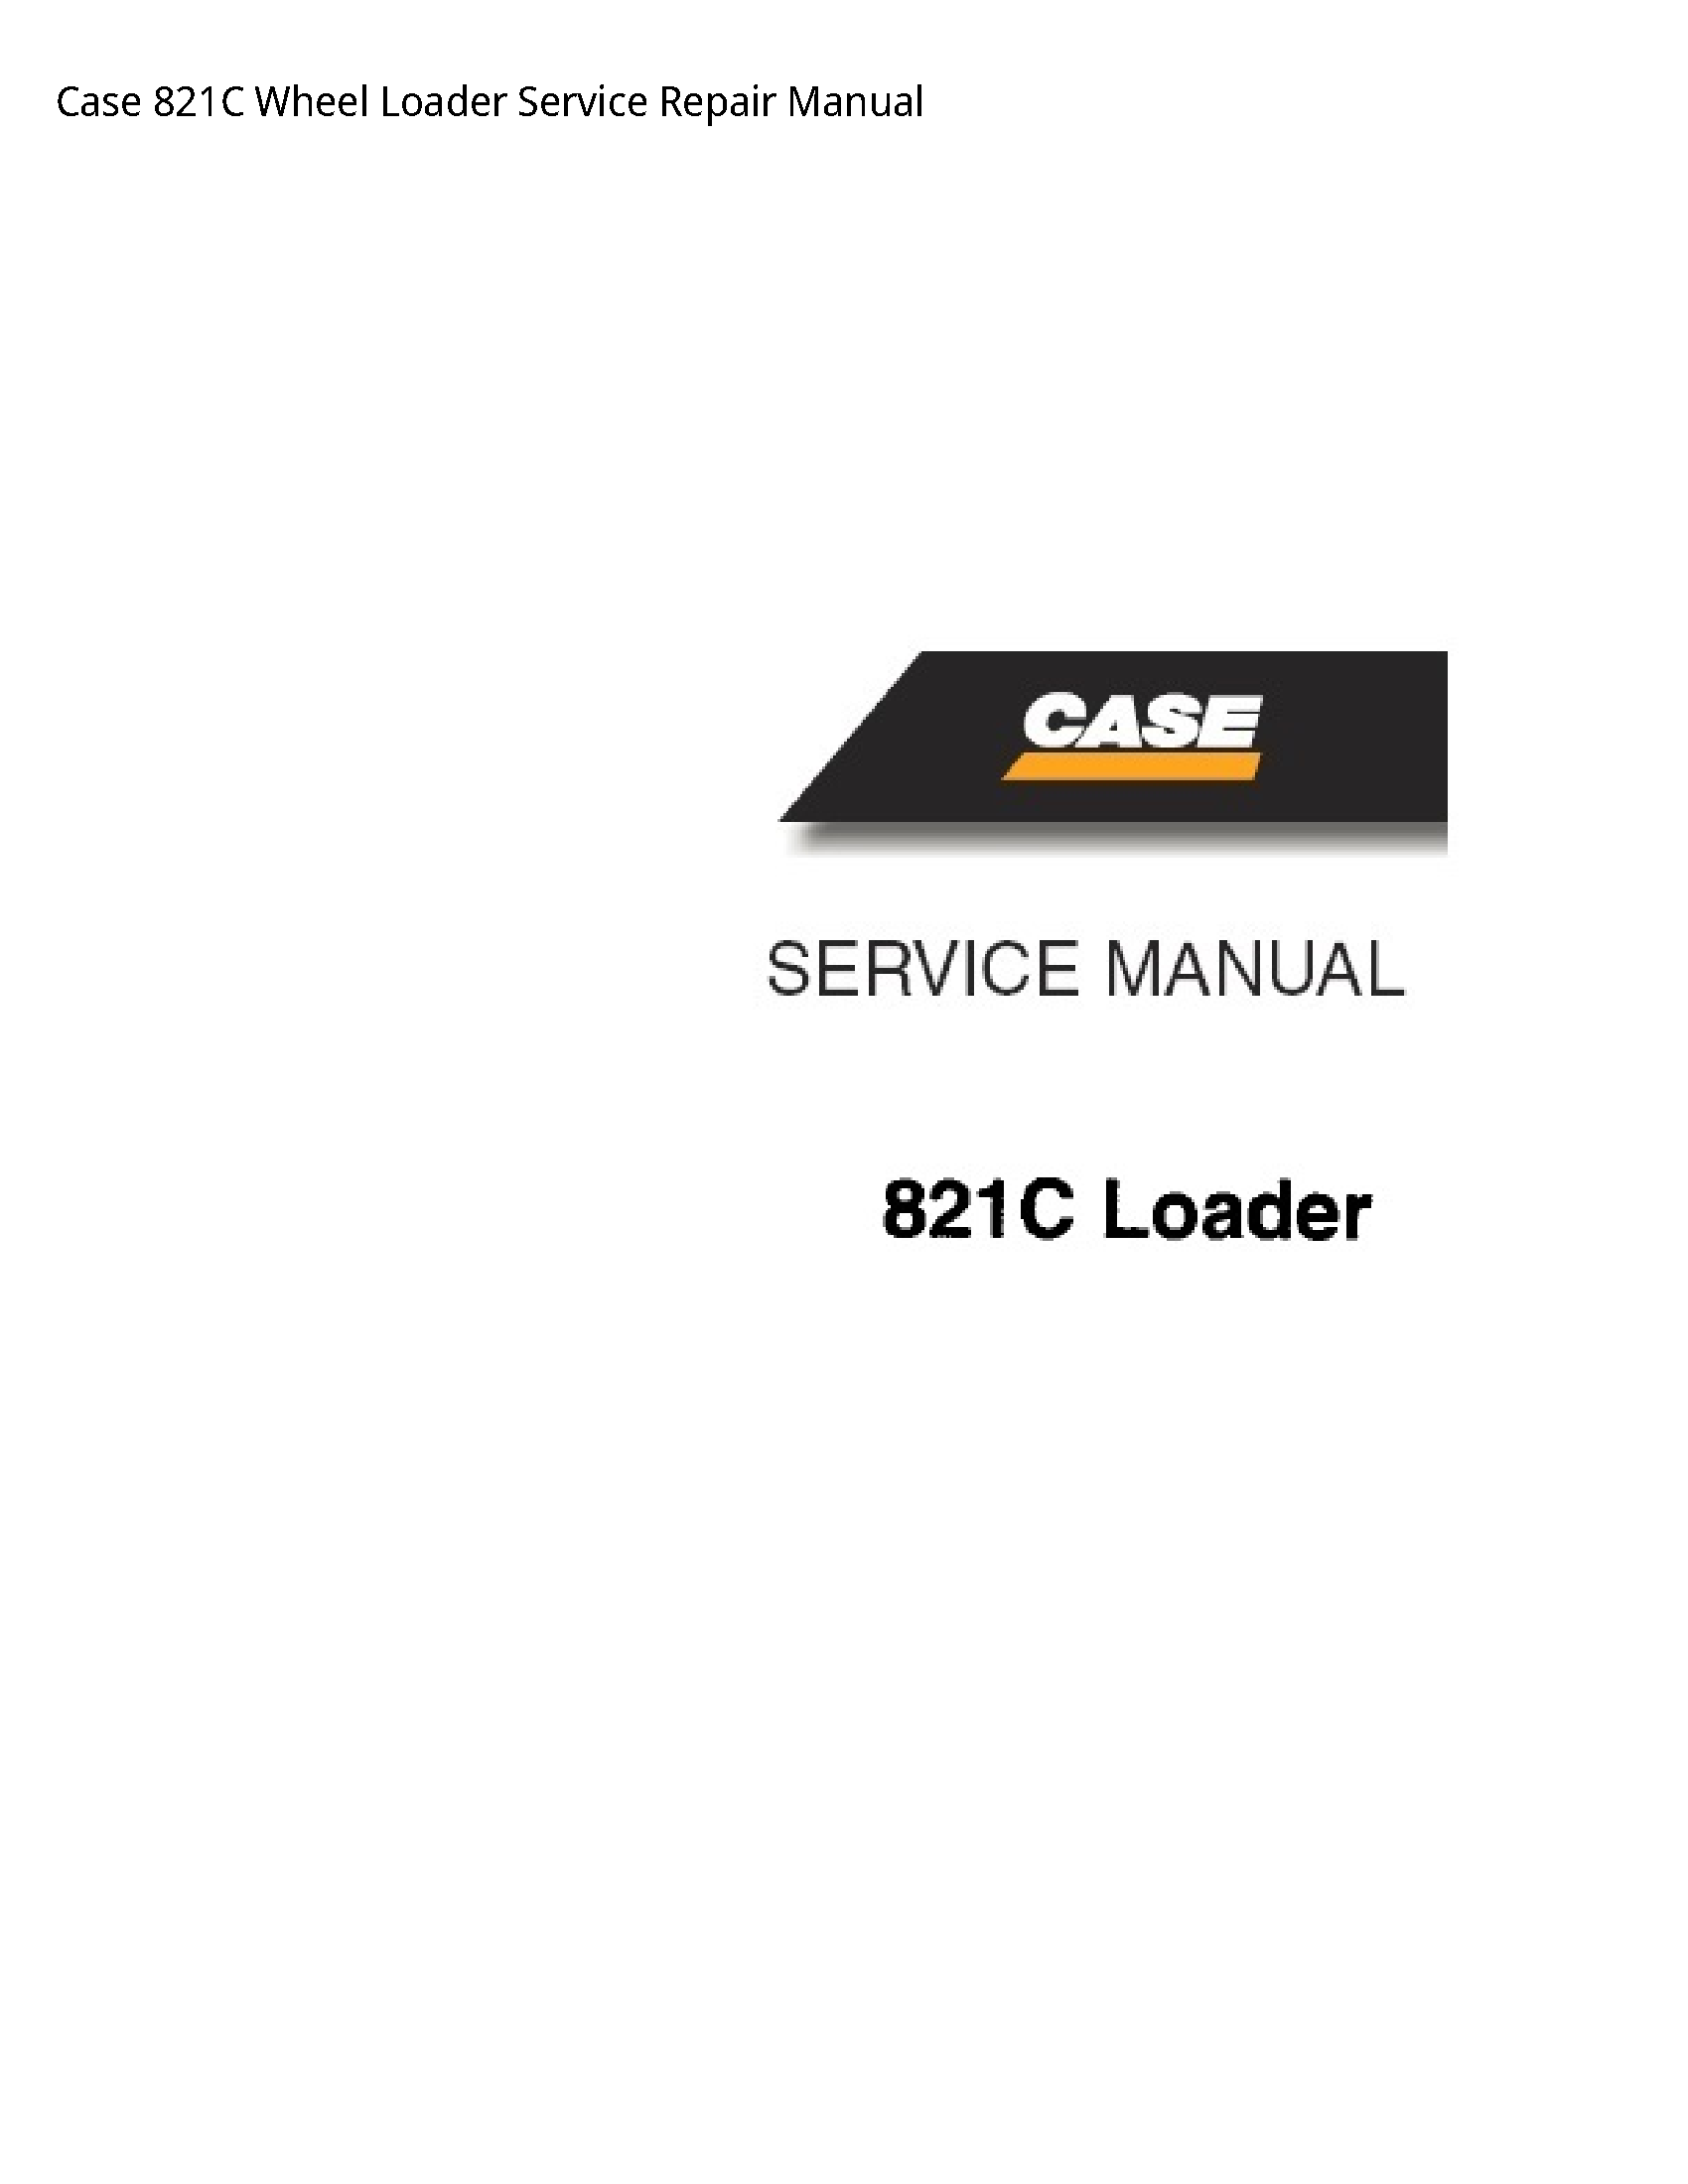 Case/Case IH 821C Wheel Loader manual